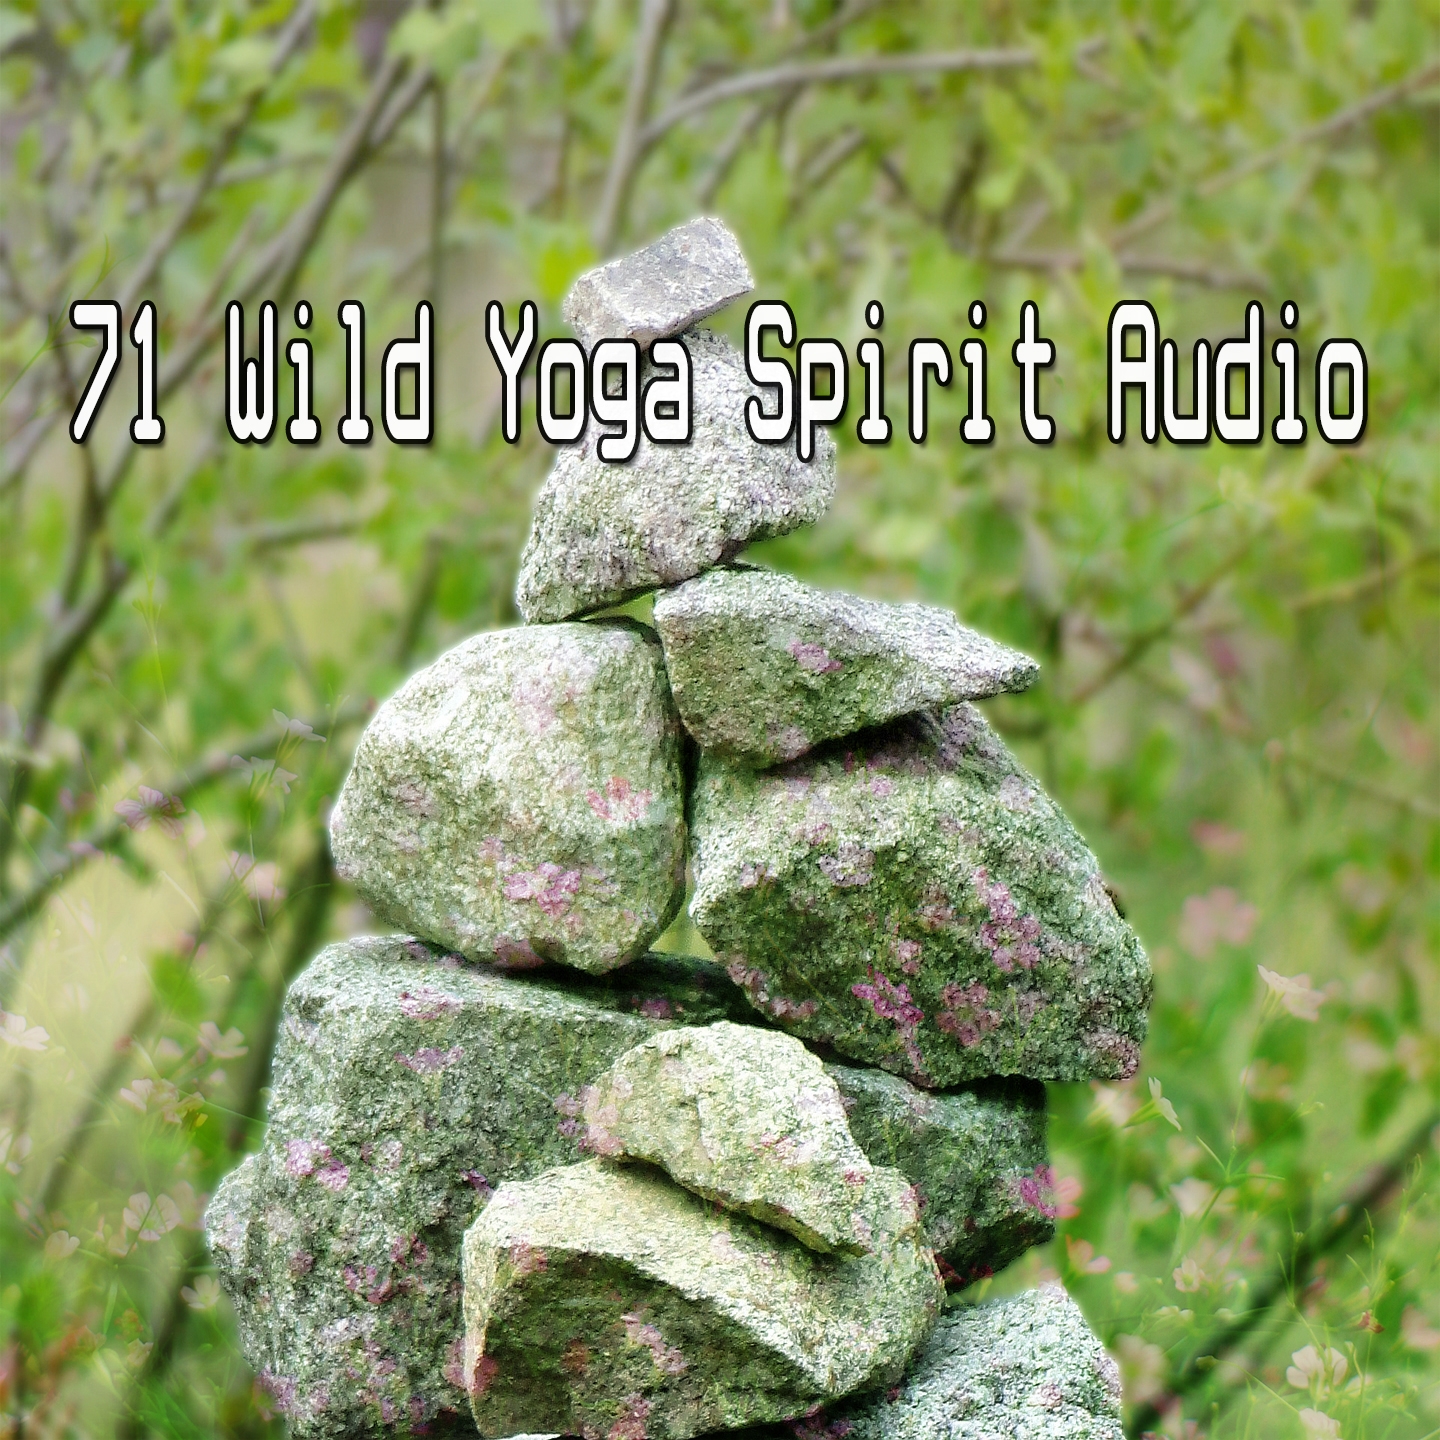 71 Wild Yoga Spirit Audio